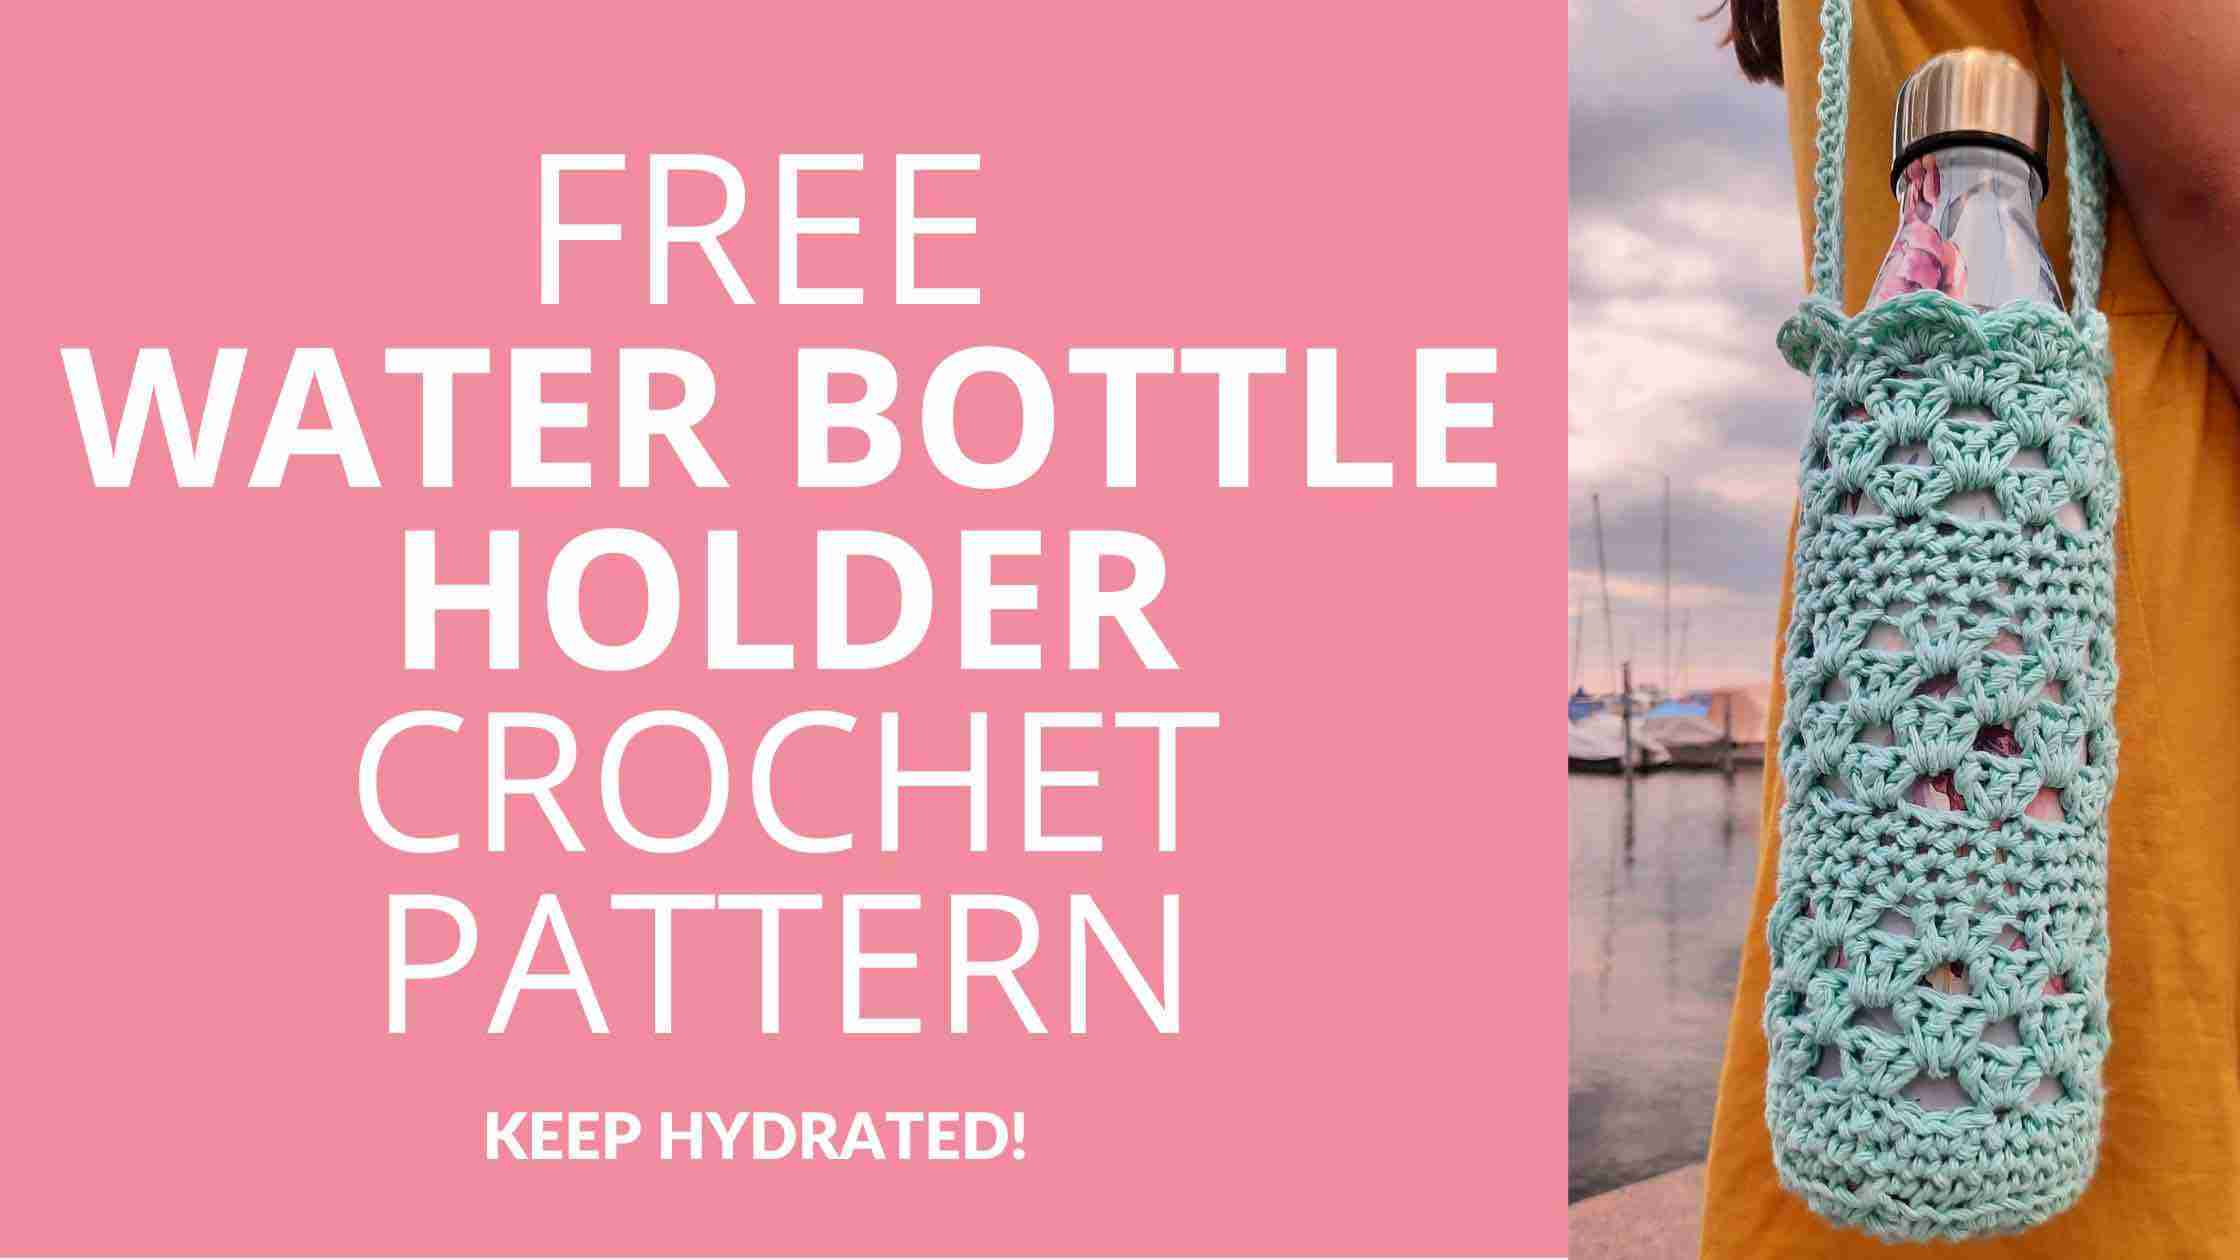 Crochet Water Bottle Holder Free Pattern